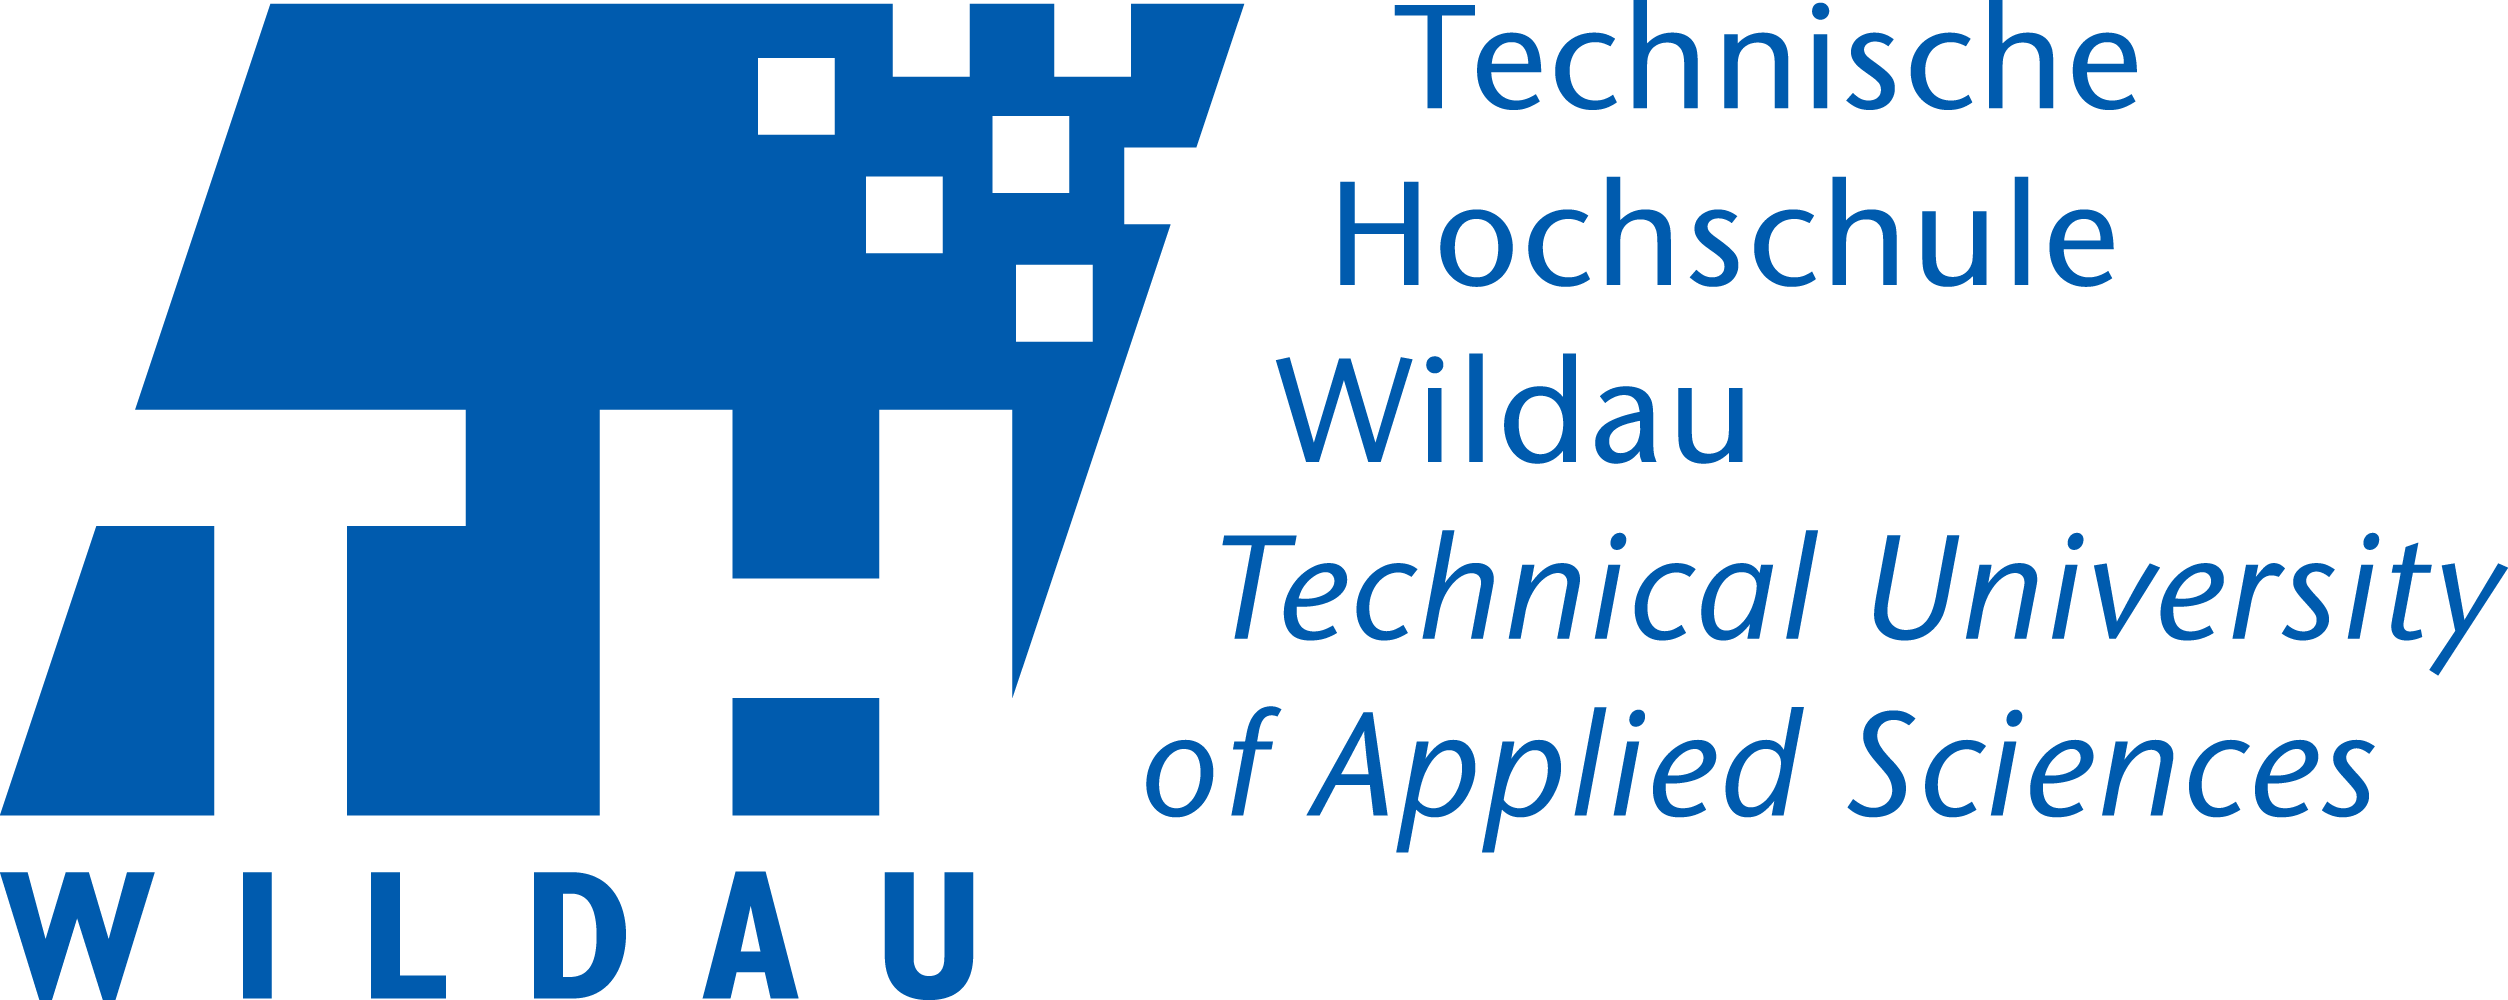 Technische Hochschule Wildau – Wikipedia